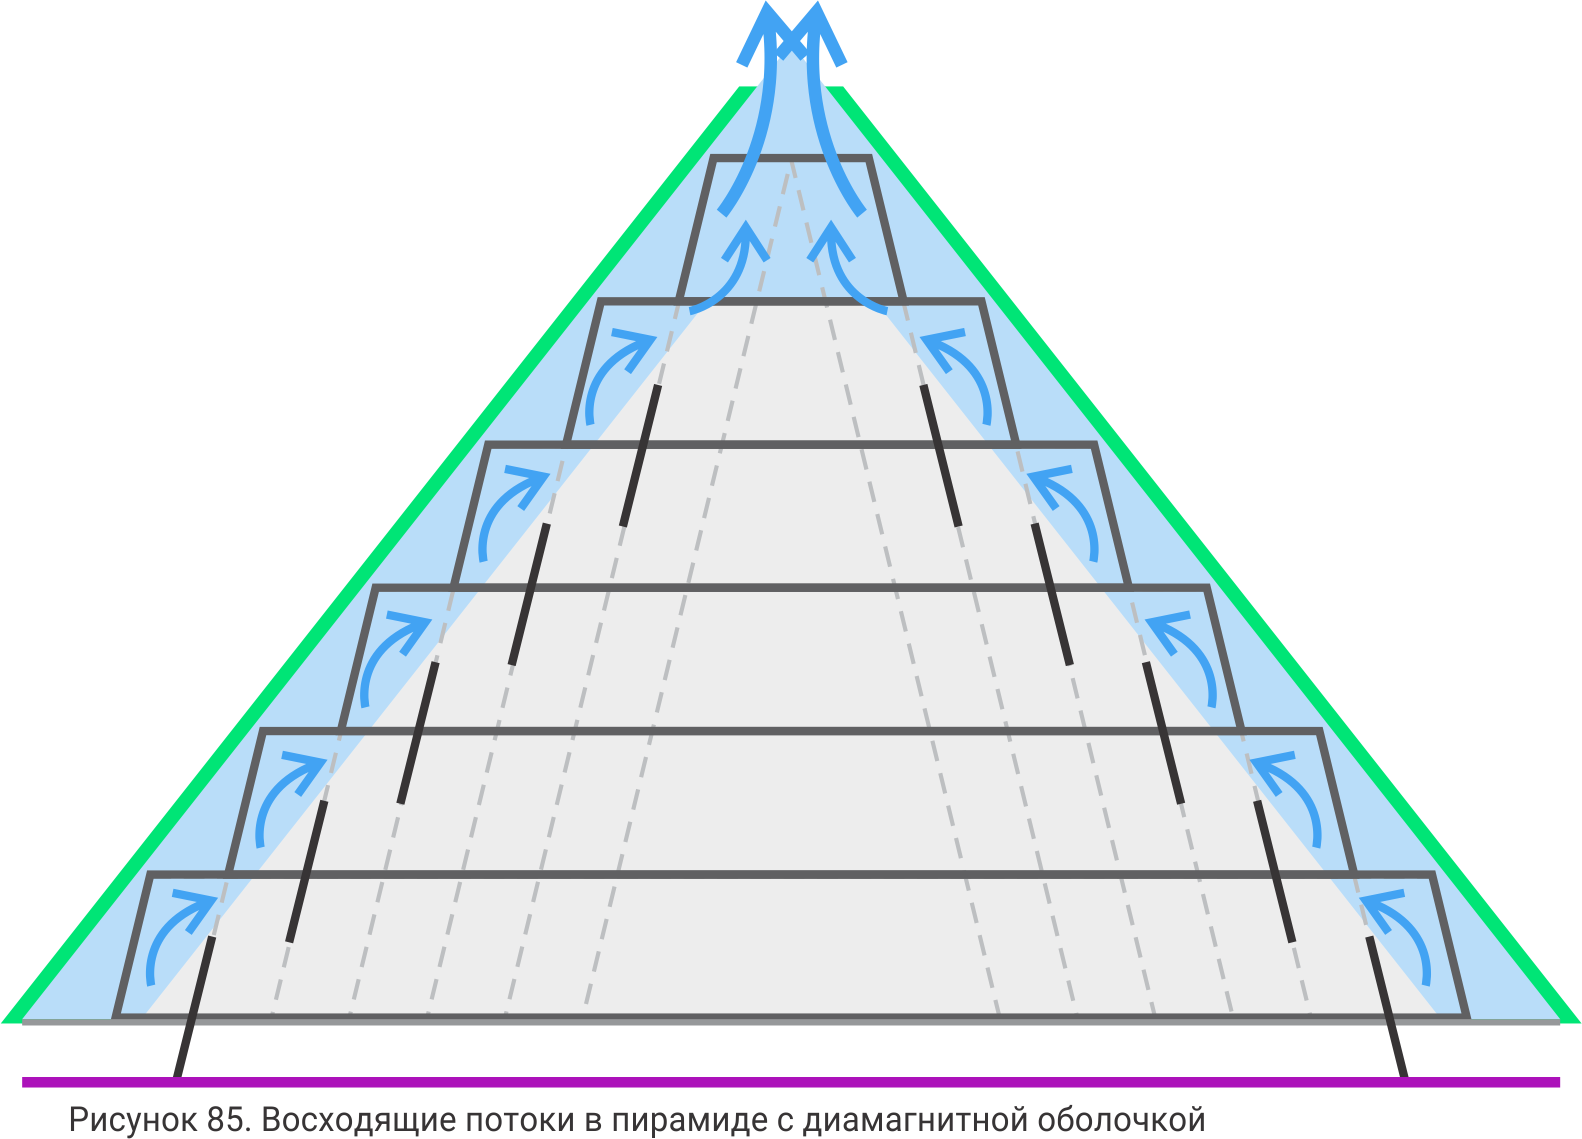 Пирамидальная структура. Схема в виде пирамиды. Ссылочная пирамида. Правильная структурная пирамида. Восходящий в 4 доме